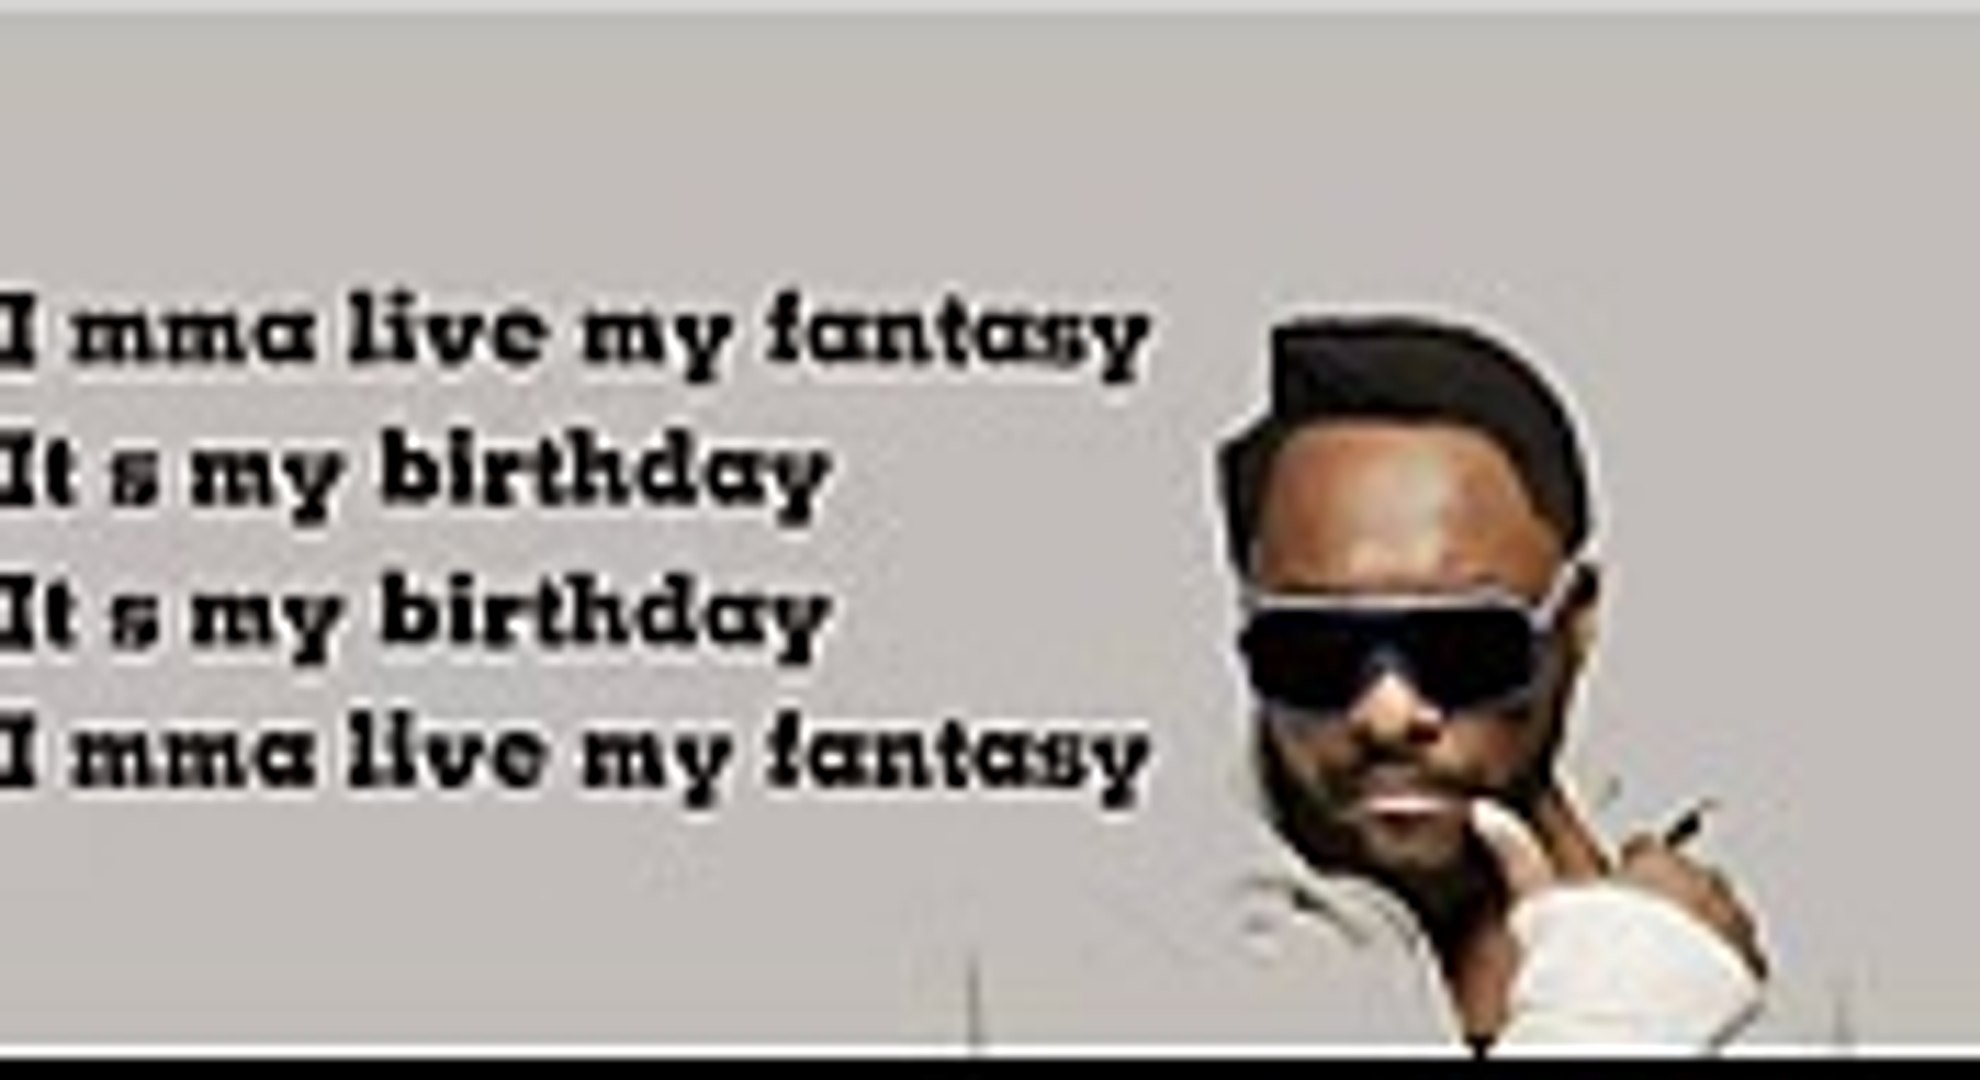 will.i.am - It's my birthday Lyrics - video Dailymotion